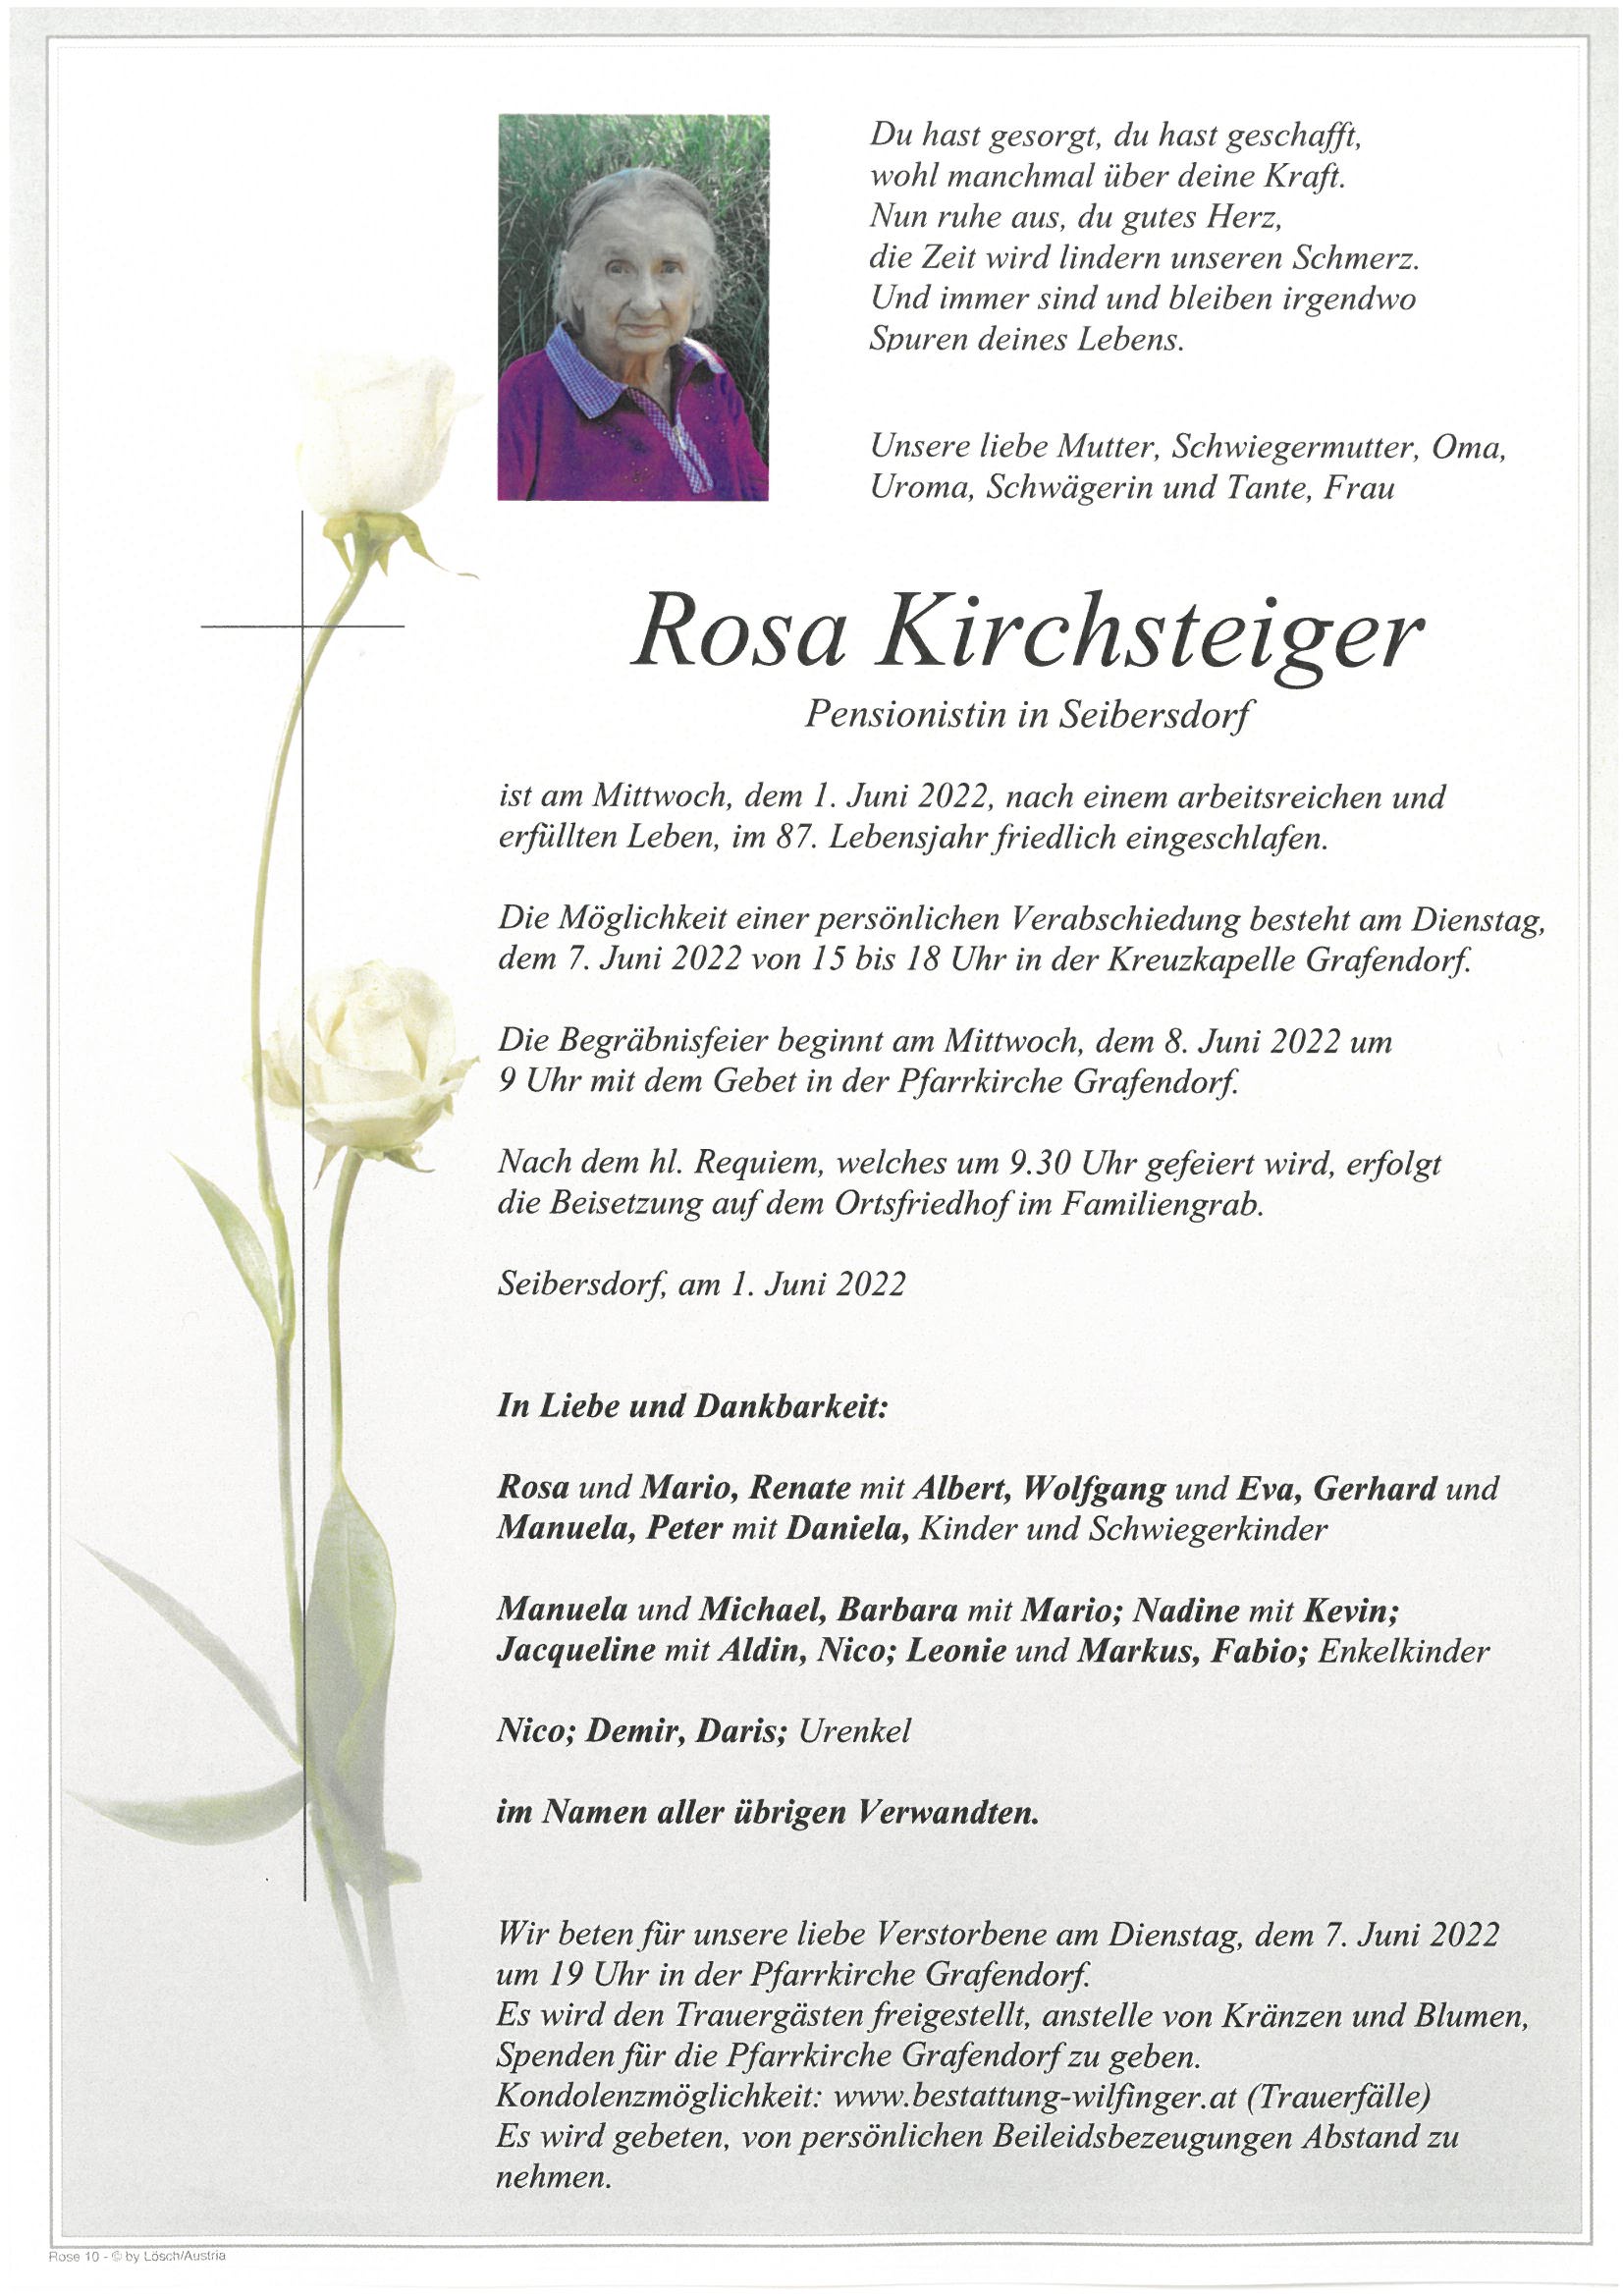 Rosa Kirchsteiger, Seibersdorf